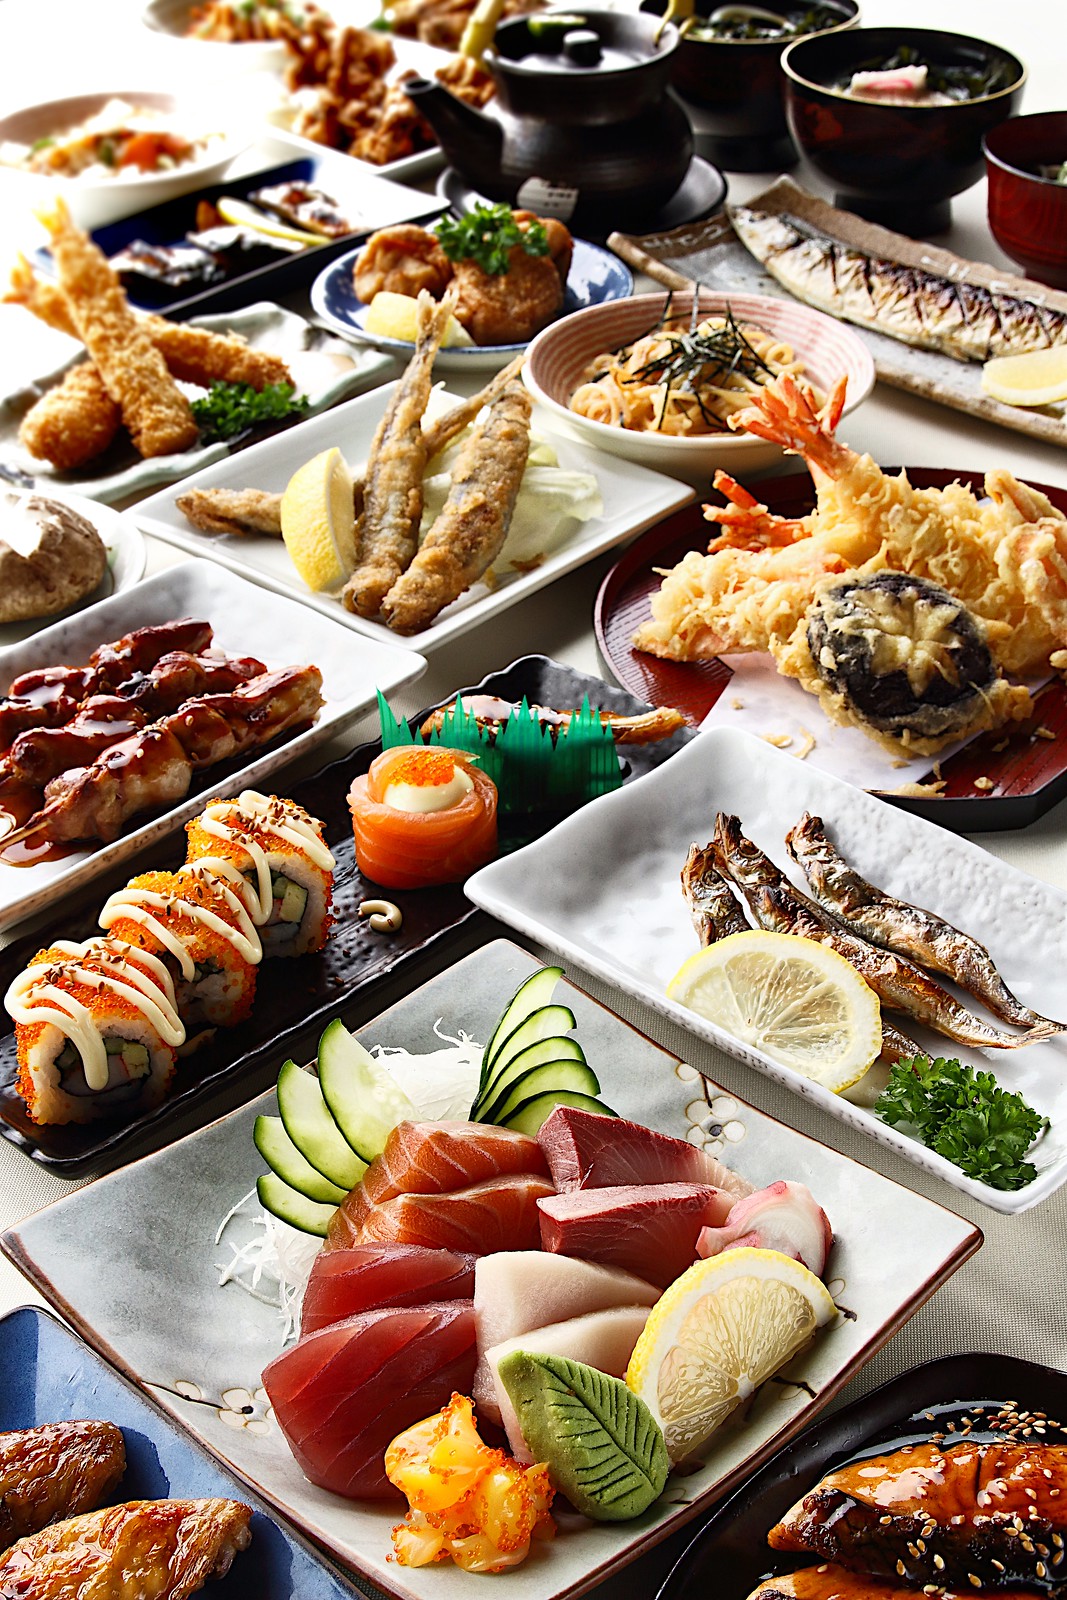 克拉克码头日本料理:自助餐